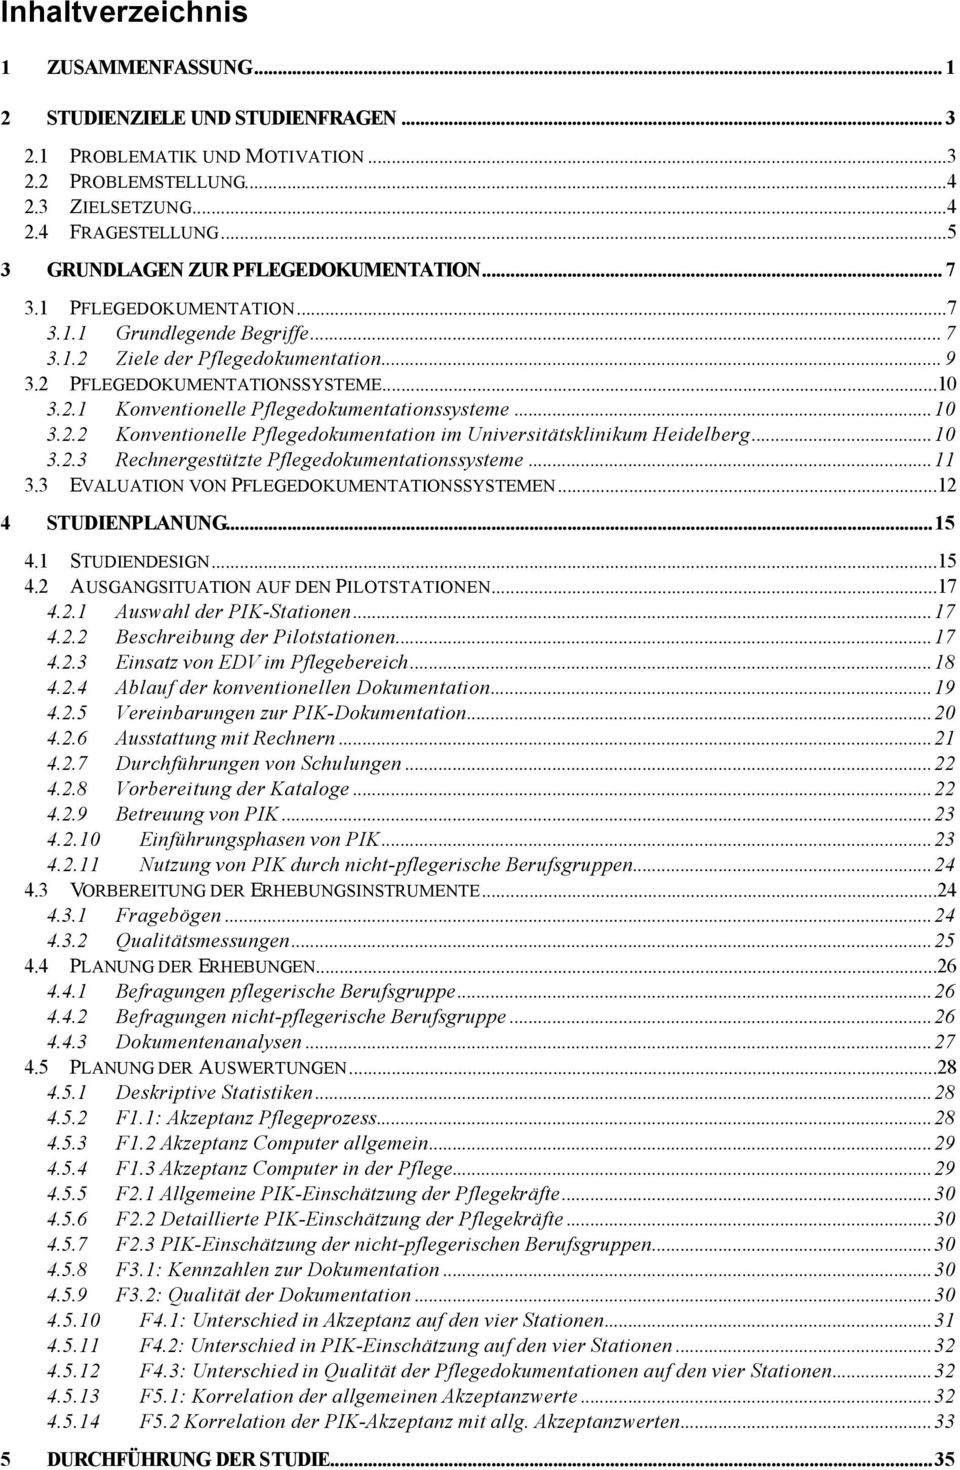 ..10 3.2.2 Konventionelle Pflegedokumentation im Universitätsklinikum Heidelberg...10 3.2.3 Rechnergestützte Pflegedokumentationssysteme...11 3.3 EVALUATION VON PFLEGEDOKUMENTATIONSSYSTEMEN.